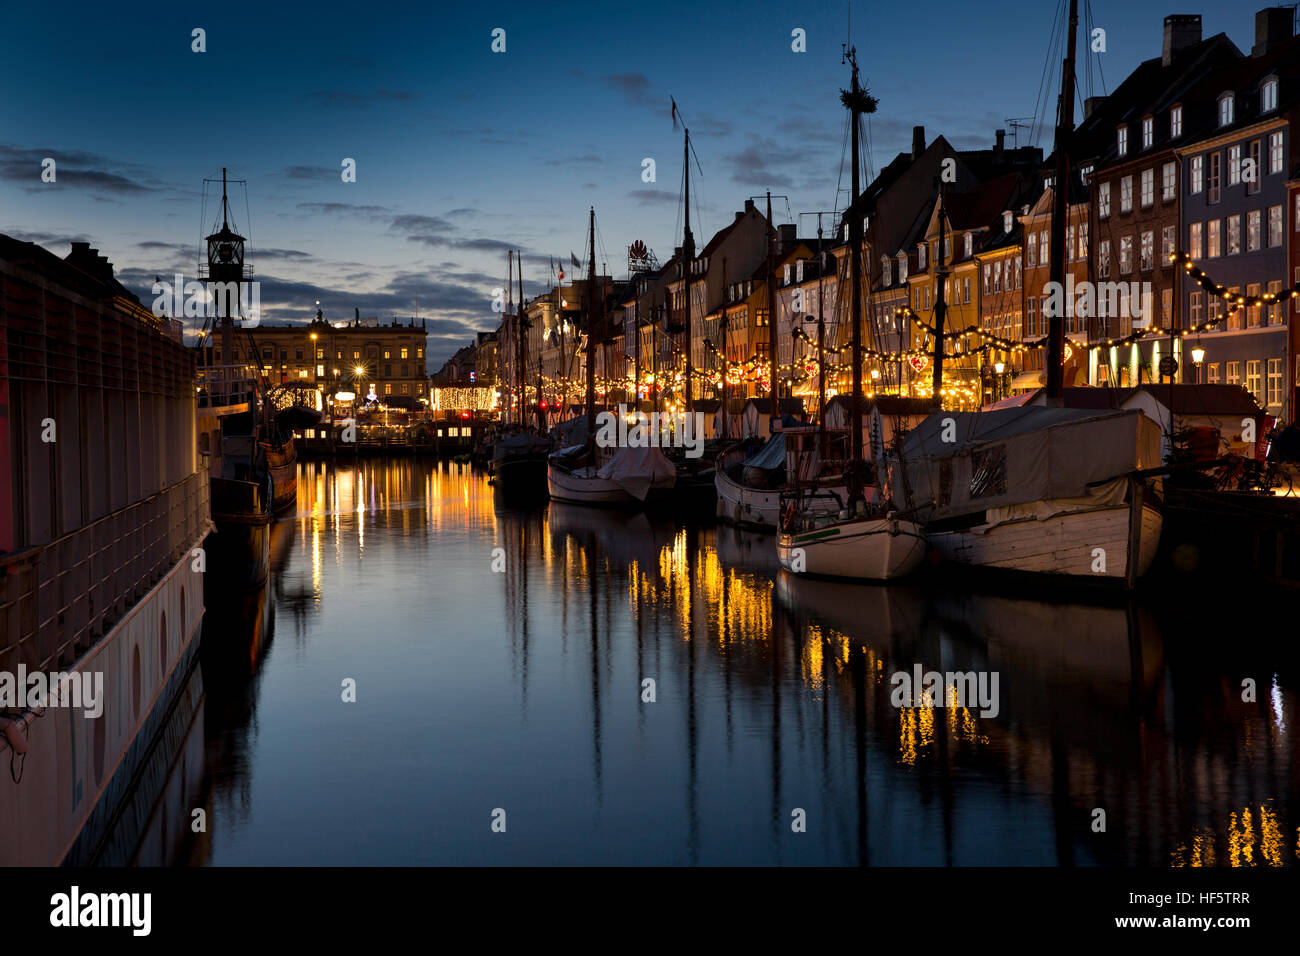 Danimarca Copenhagen Nyhavn, inverno, barche attraccate al molo di notte, riflessa nell'acqua Foto Stock